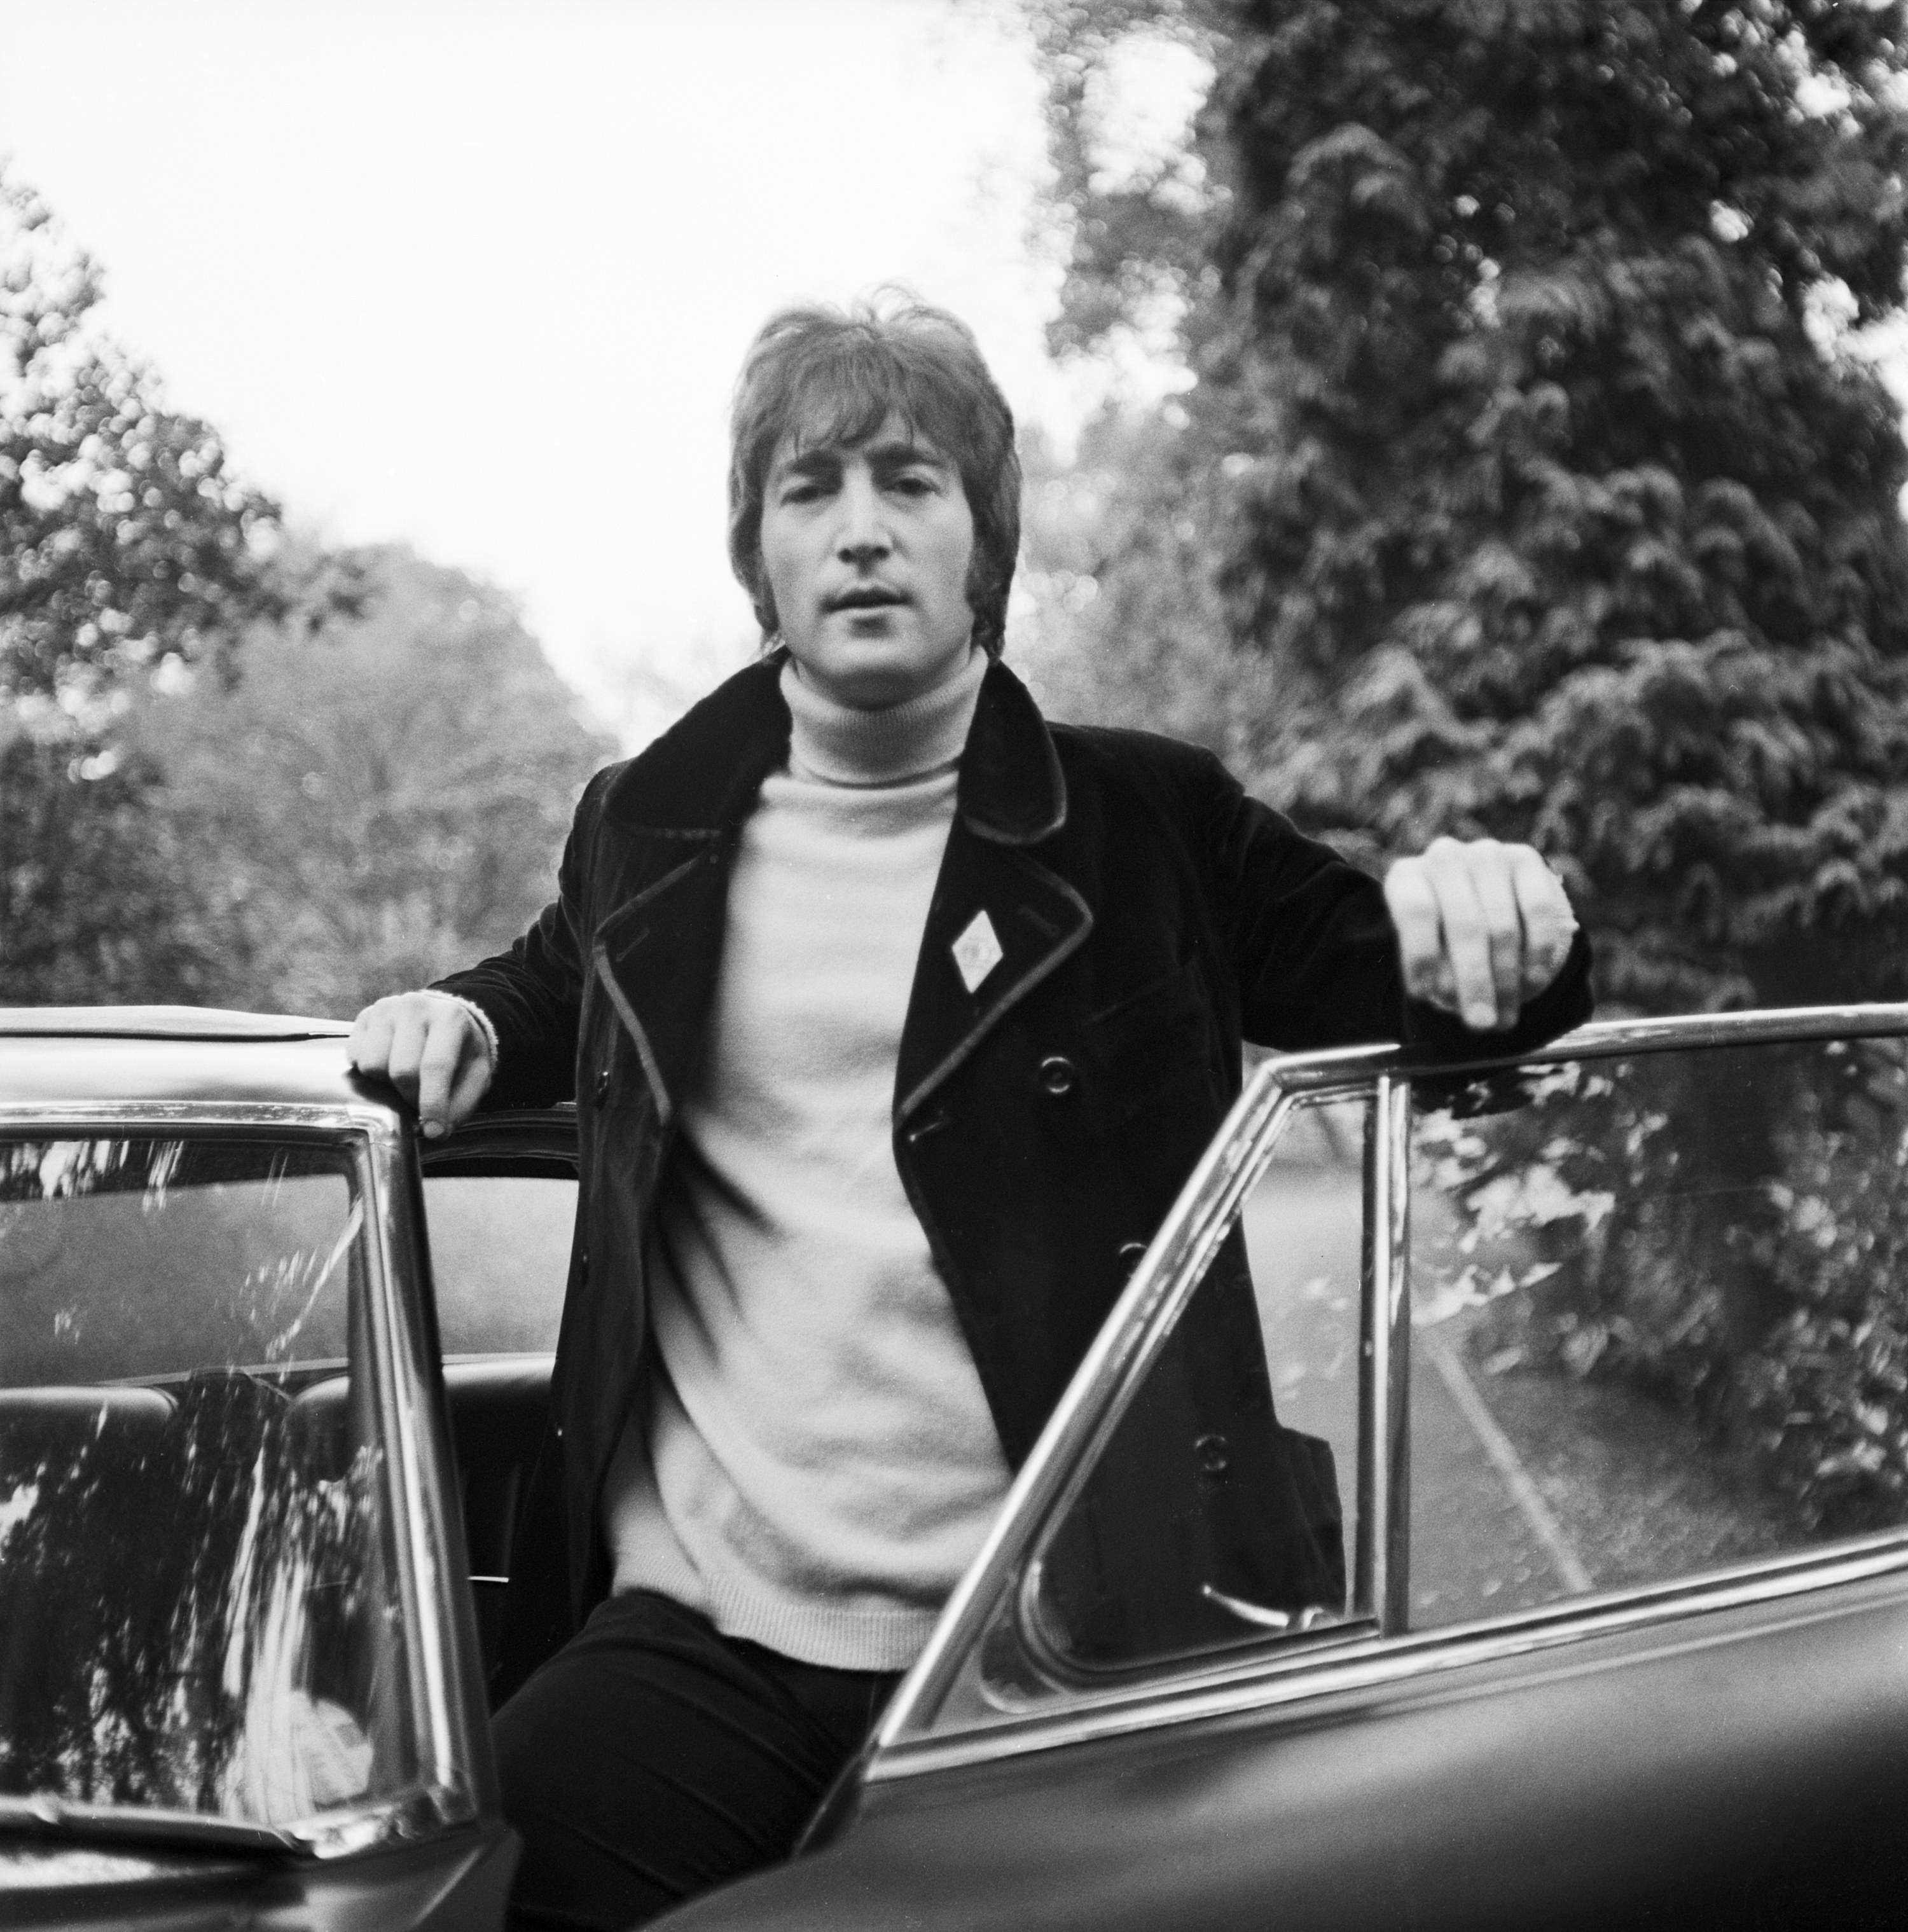 John Lennon in a turtleneck standing in a car